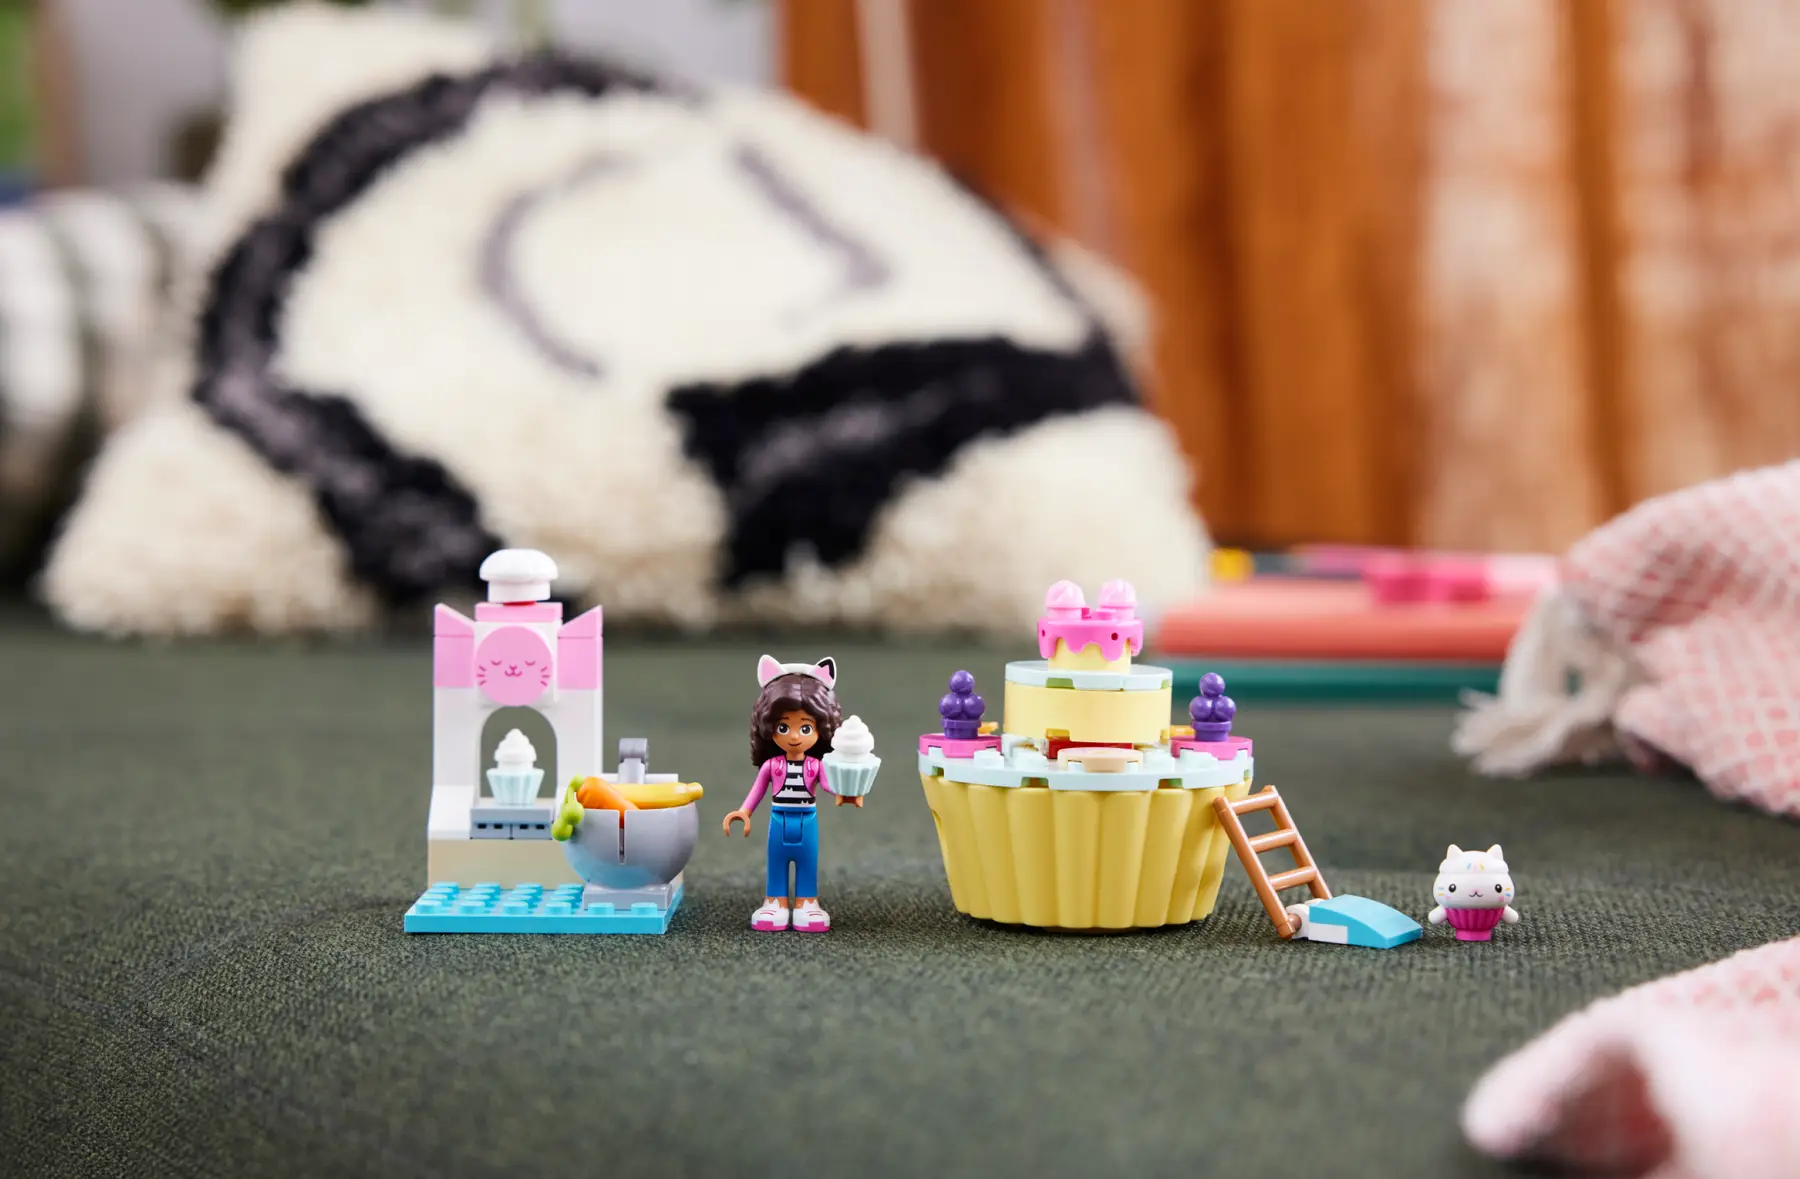 Lego Gabby΄s Dollhouse - Bakey With Cakey Fun 10785